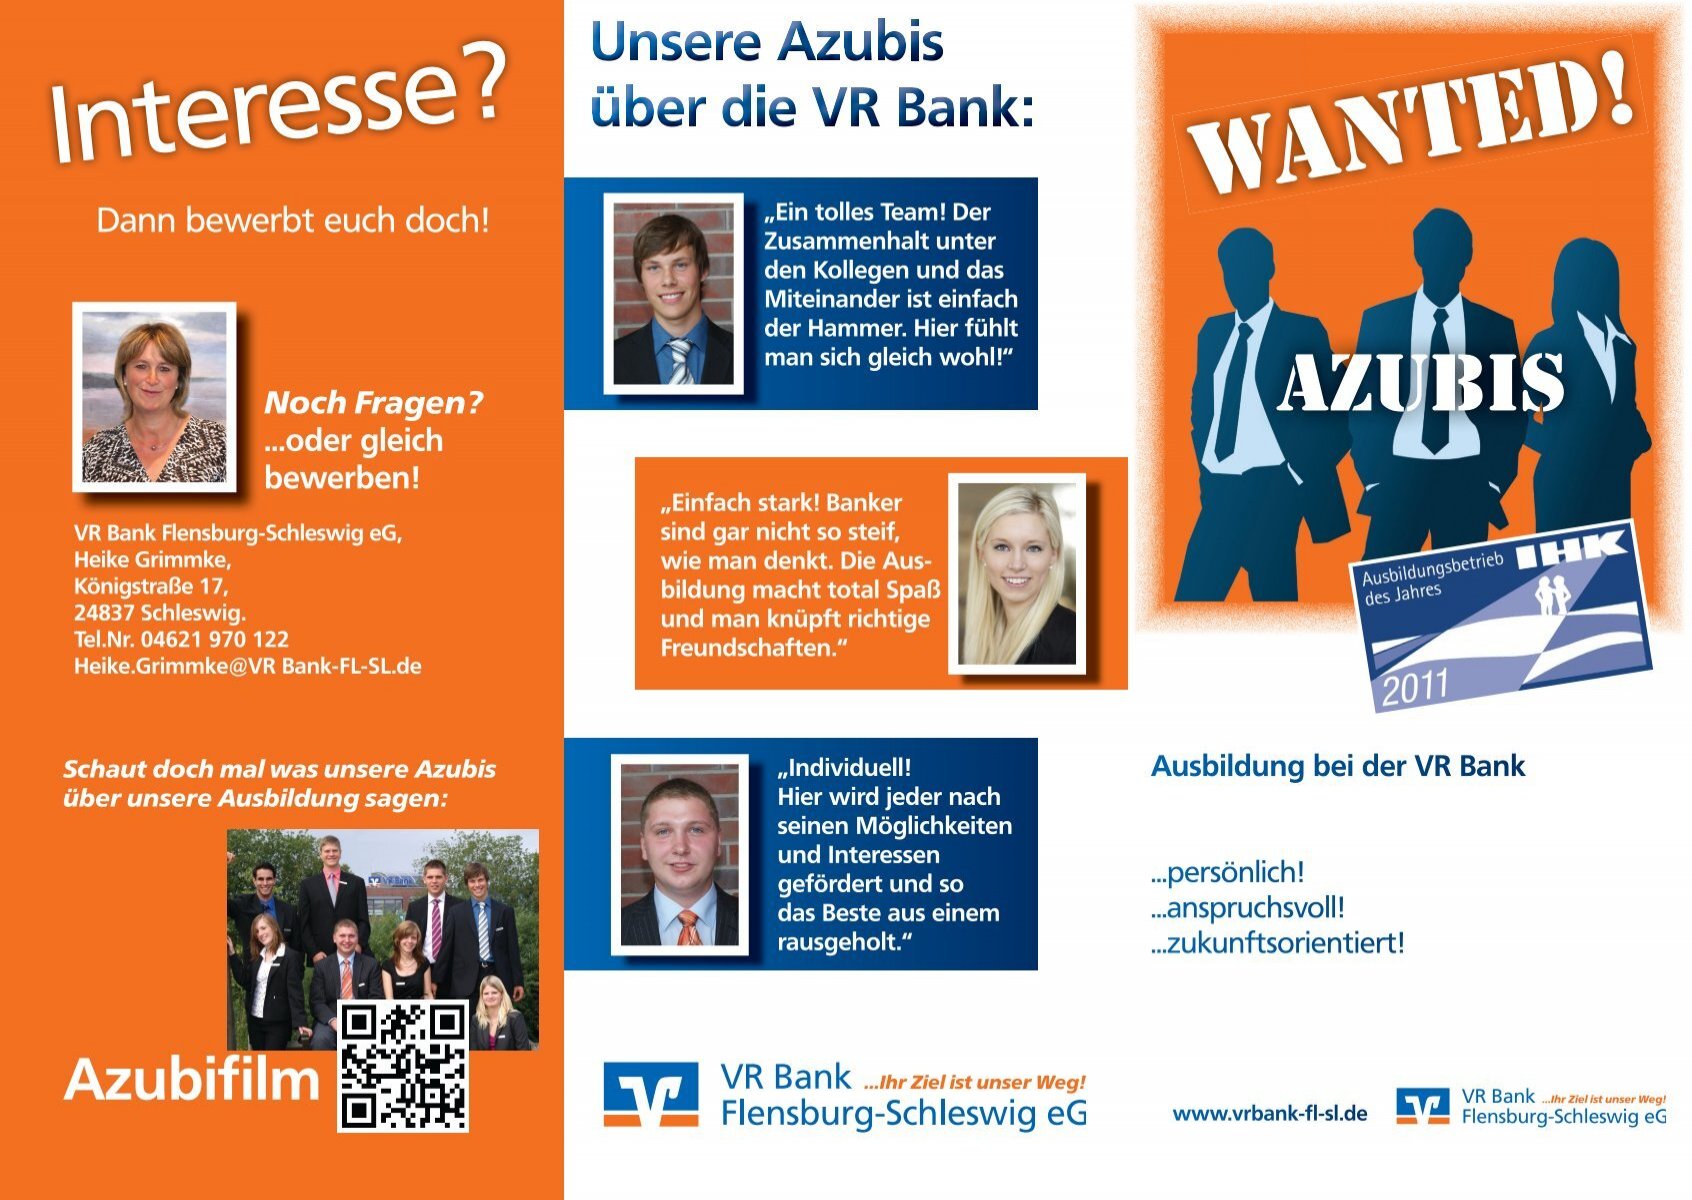 Download Azubi-Flyer VR Bank Flensburg-Schleswig eG